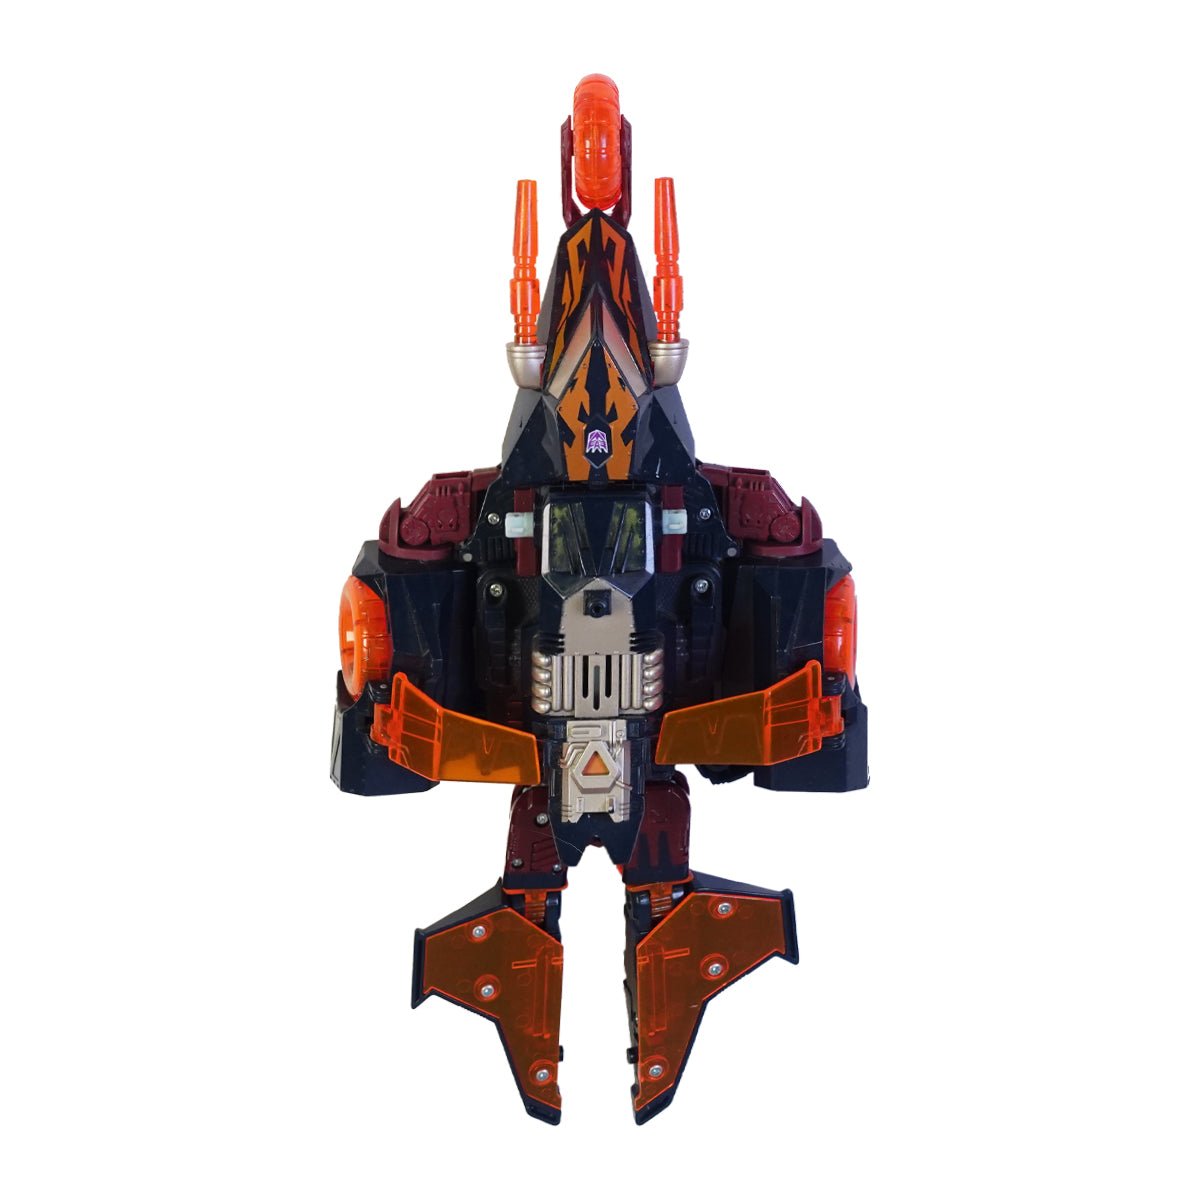 (Pre-Owned) Figurines - Transformer : Decepticon - دمية - Store 974 | ستور ٩٧٤